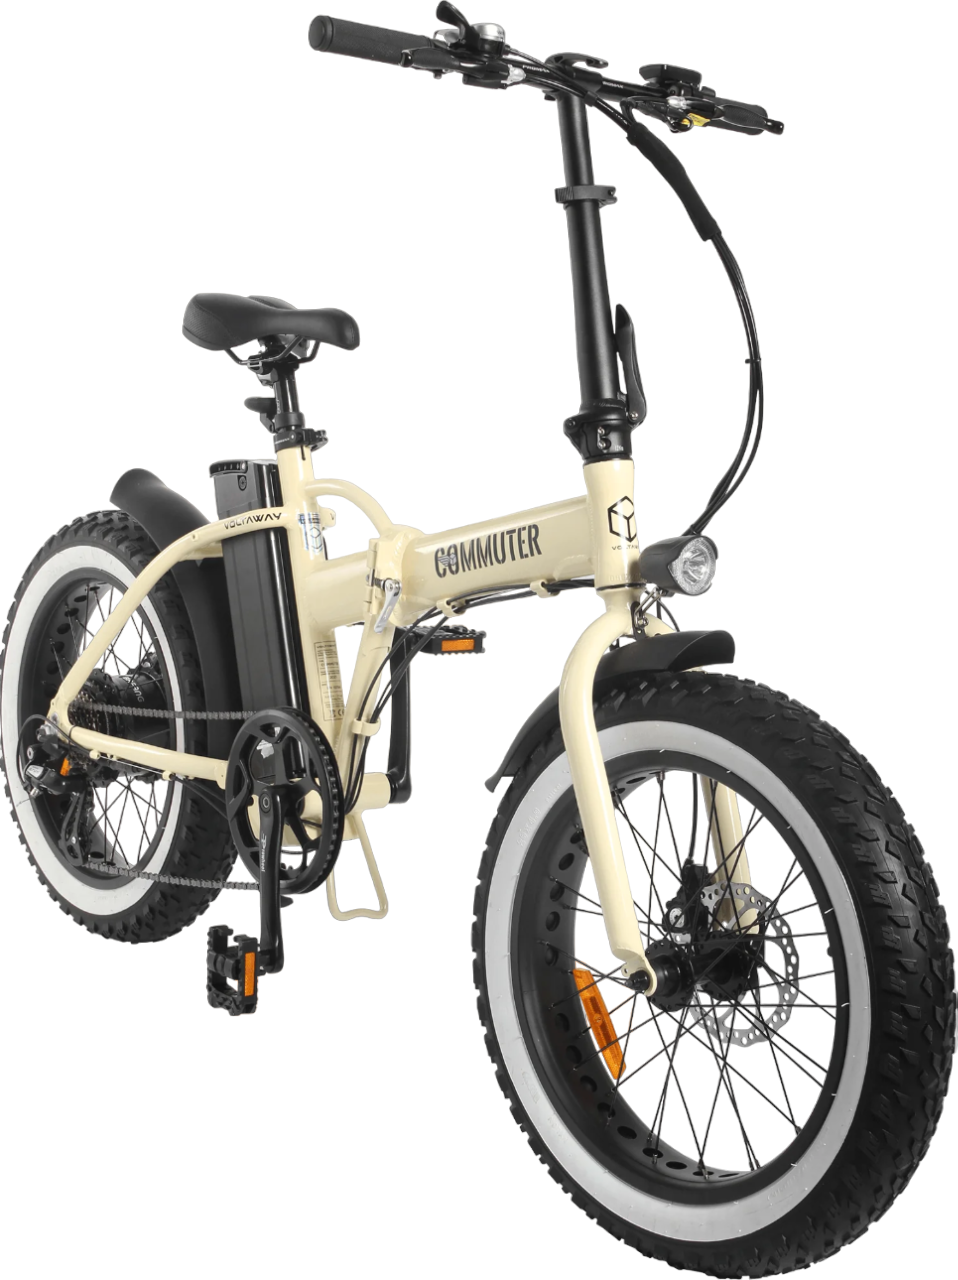 opvouwbare-fatbike-genaamd-voltaway-commuter-met-sportieve-eigenschappen-en-zand-kleur,-gefotografeerd-vanaf-de-voorkant